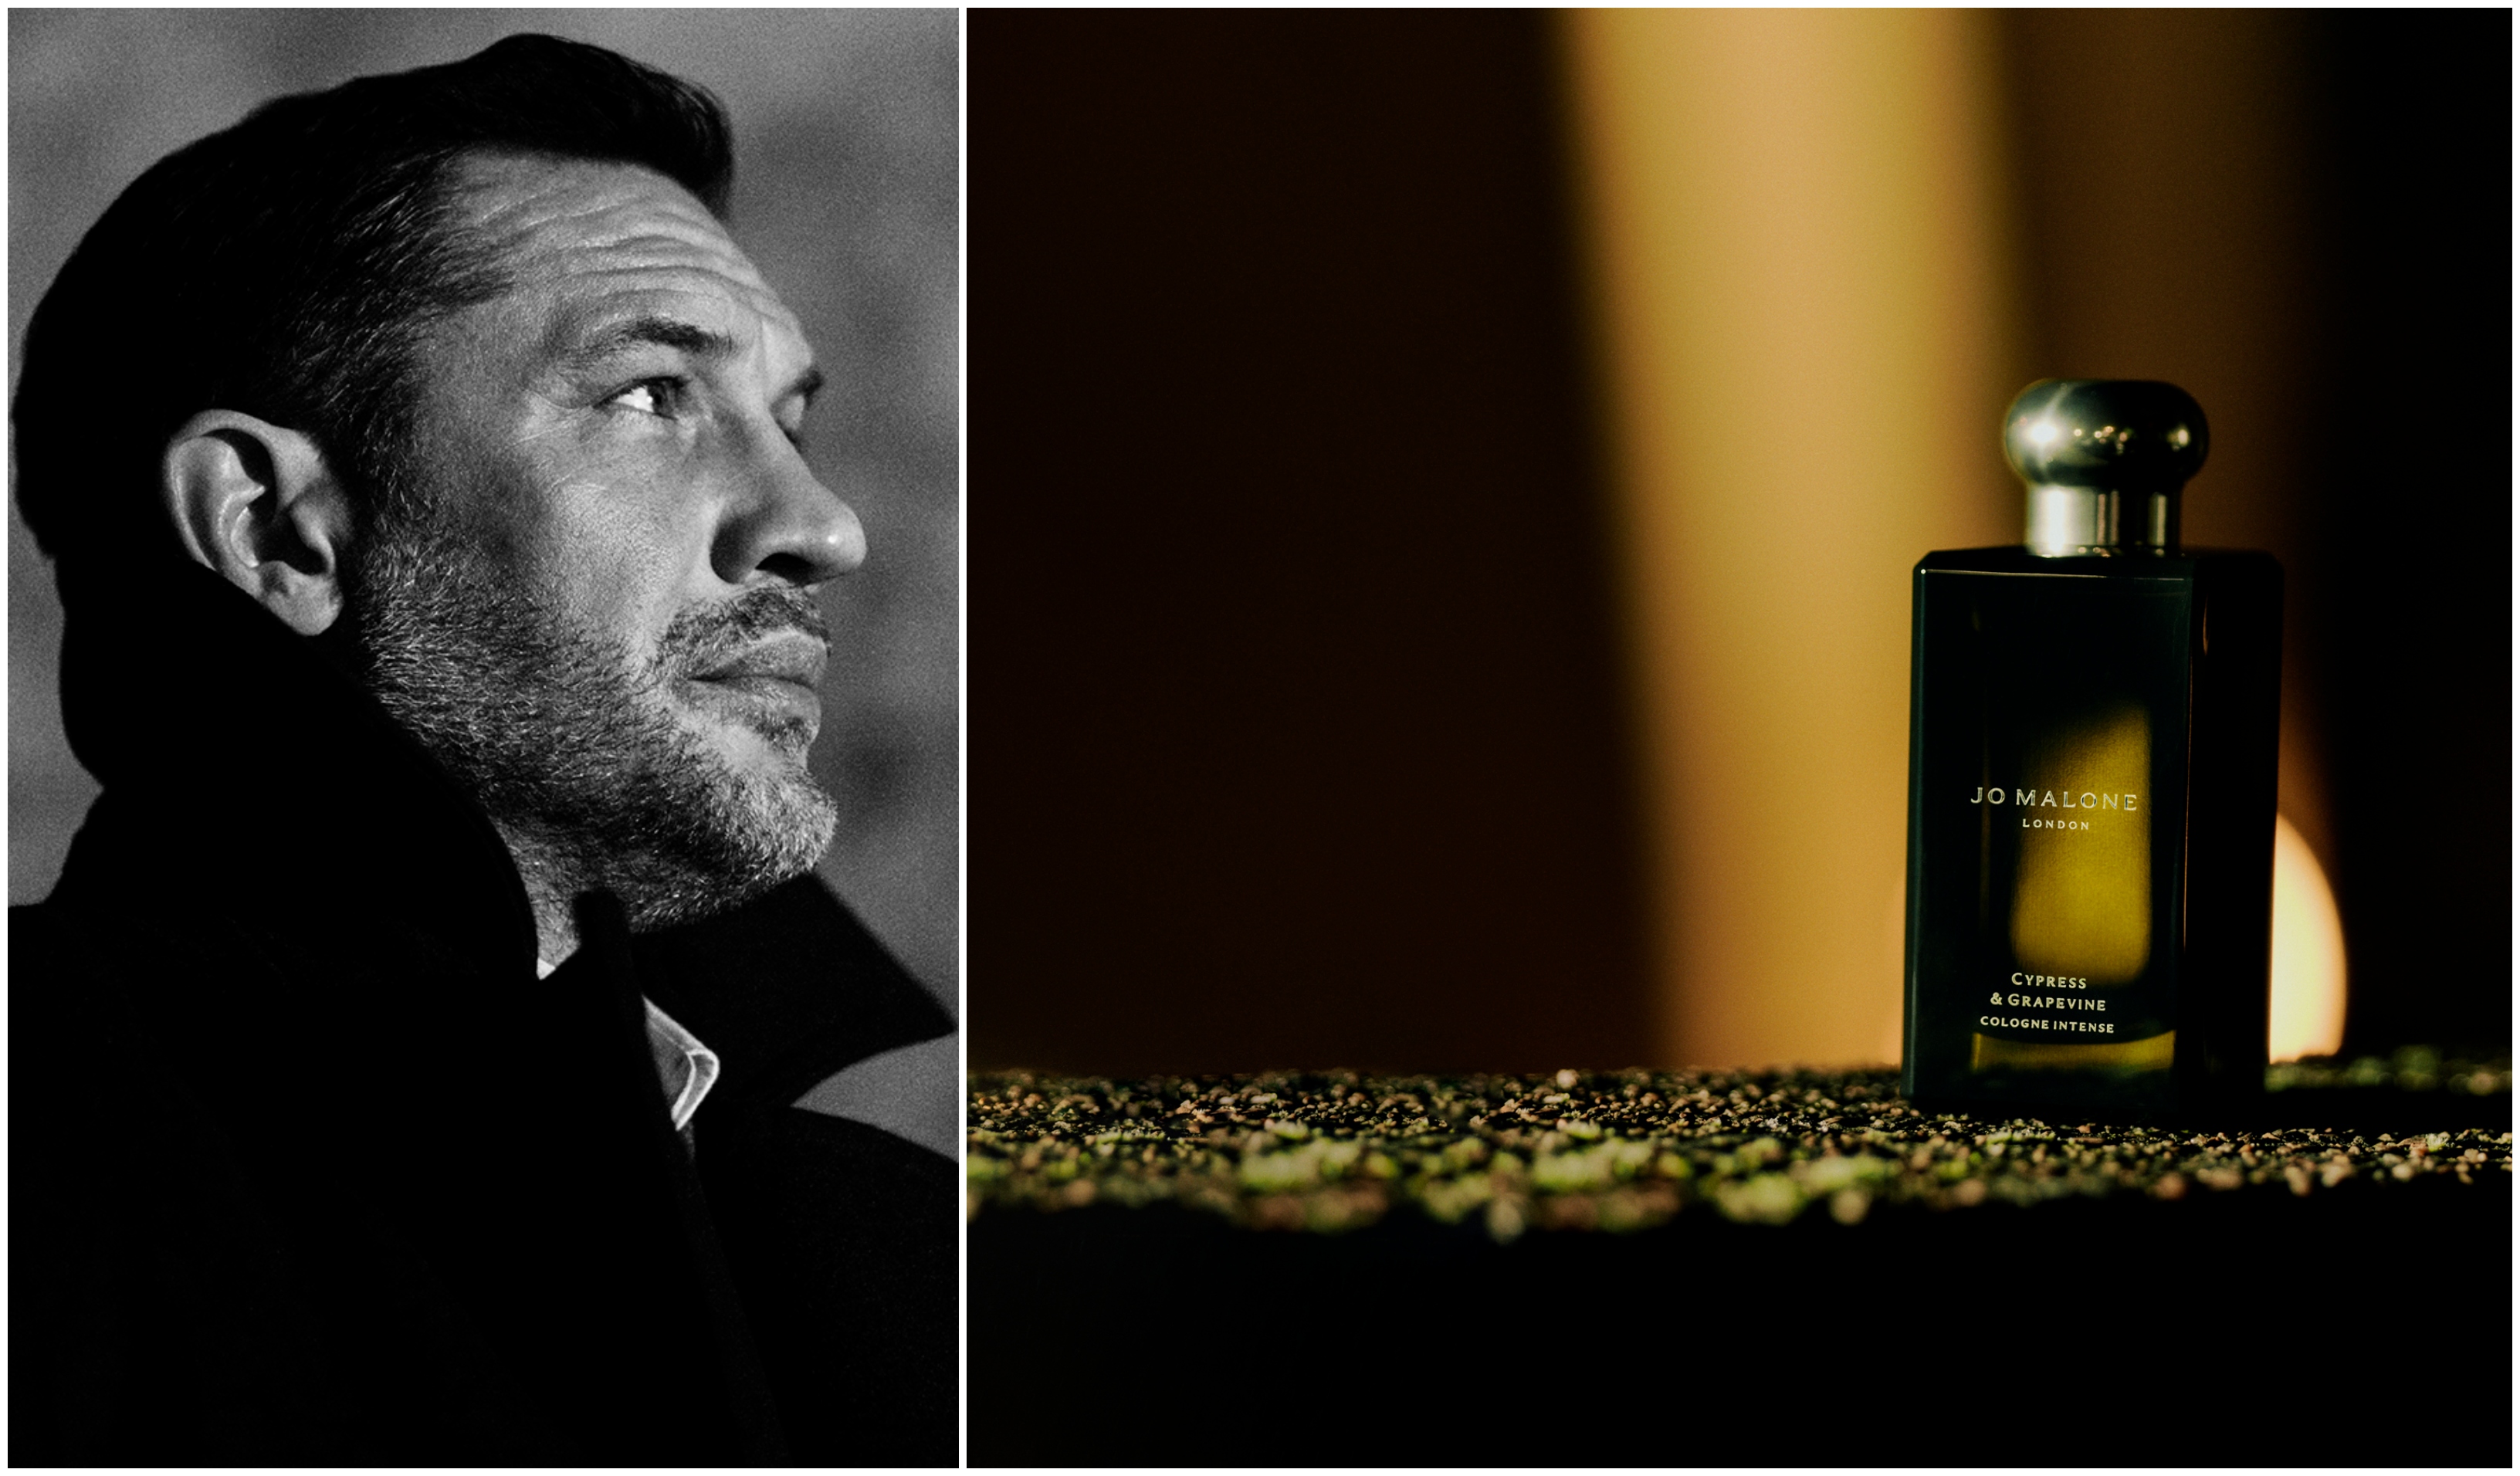 Ο Tom Hardy είναι ο ambassador του Jo Malone για το νέο άρωμα “Cypress & Grapevine Cologne Intense”